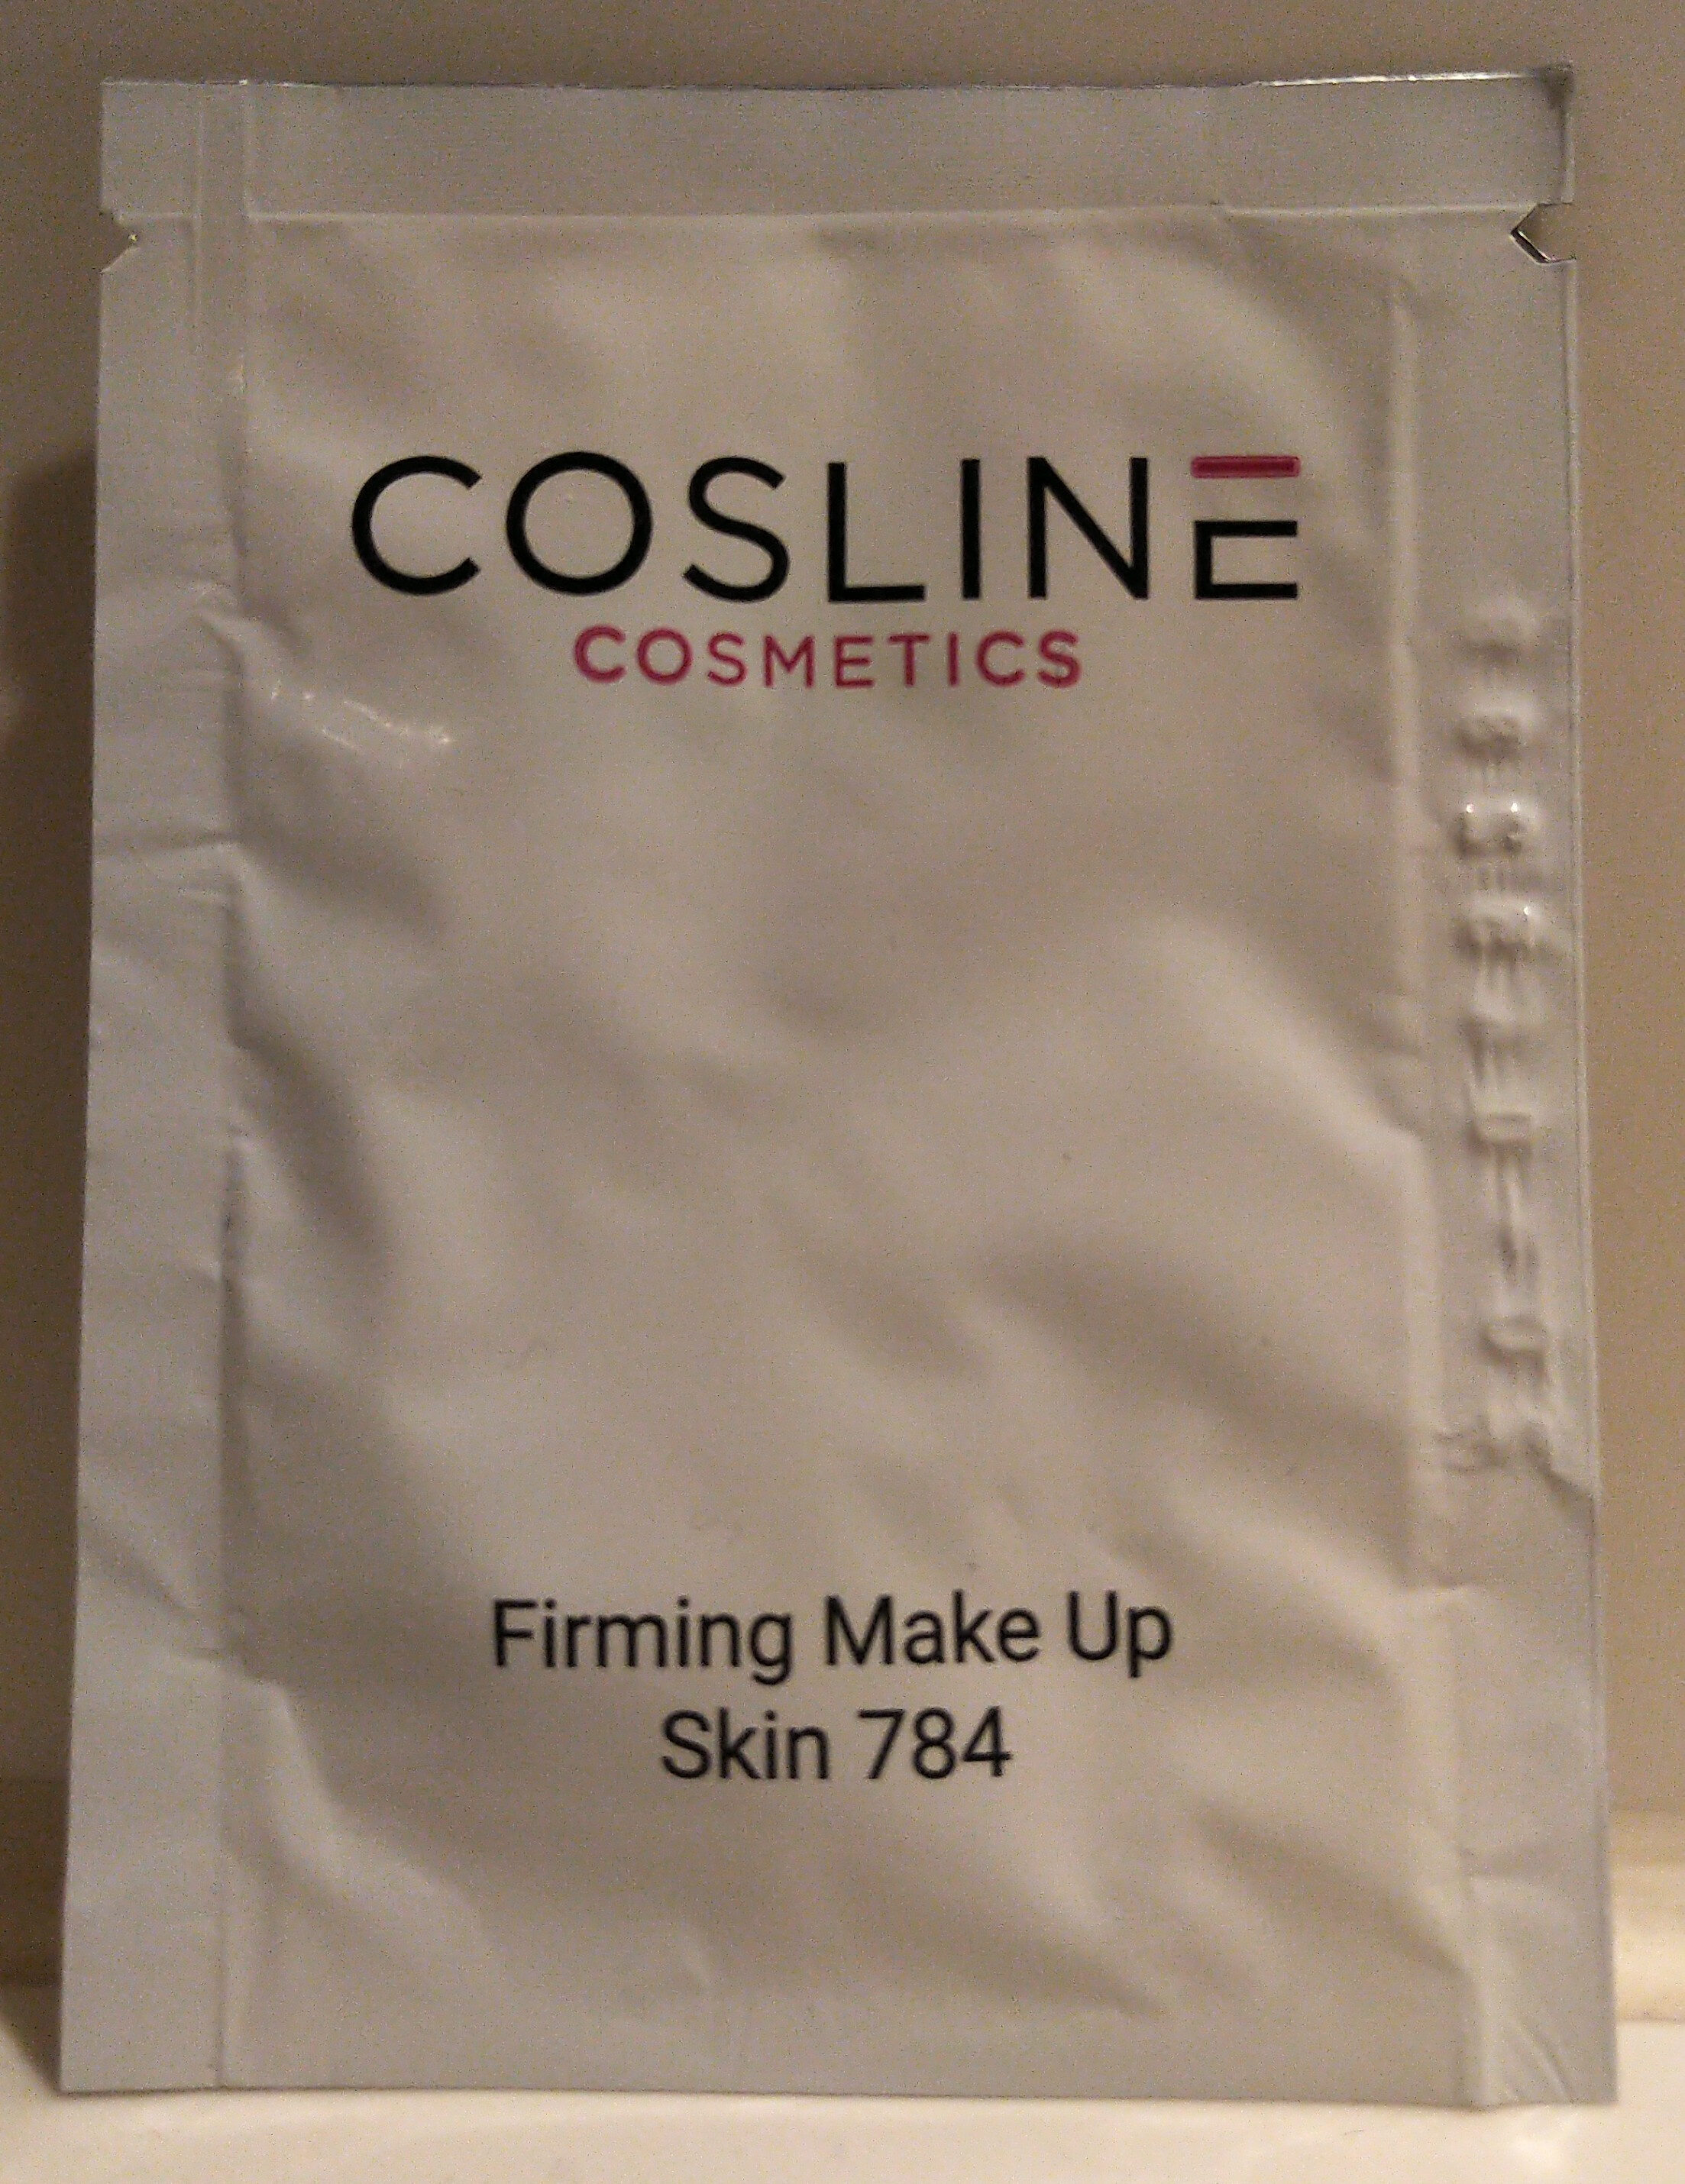 Firming Make Up Skin 784 - Produkt - de